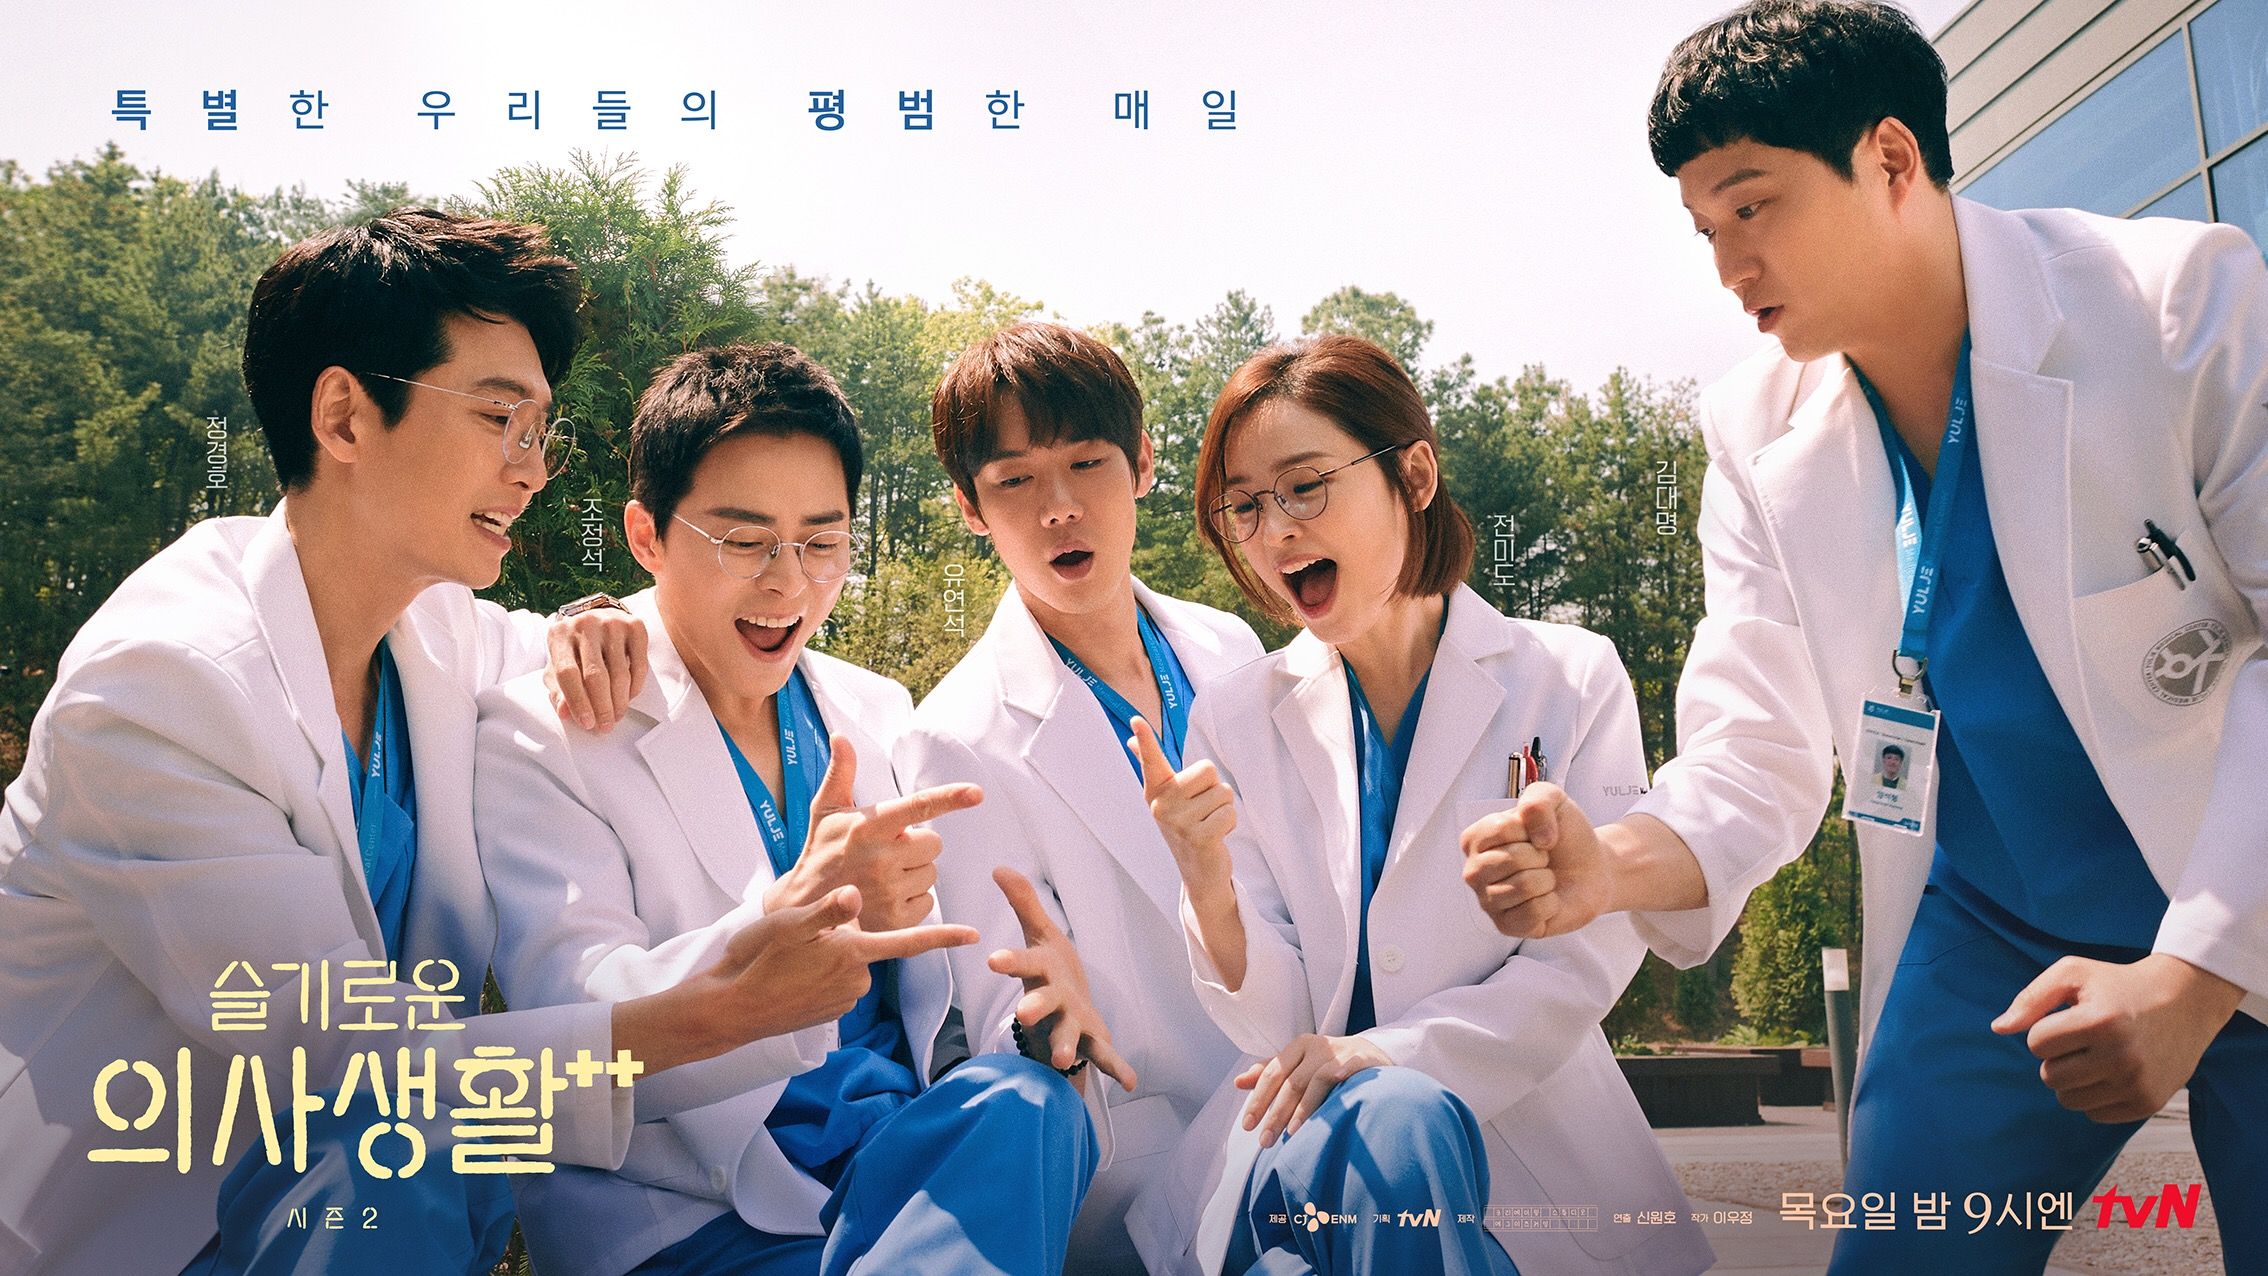 一度観たら絶対ハマる Netflix韓国ドラマ 賢い医師生活 主人公5人組 99ズ の魅力と 3つの見所ポイント 概要